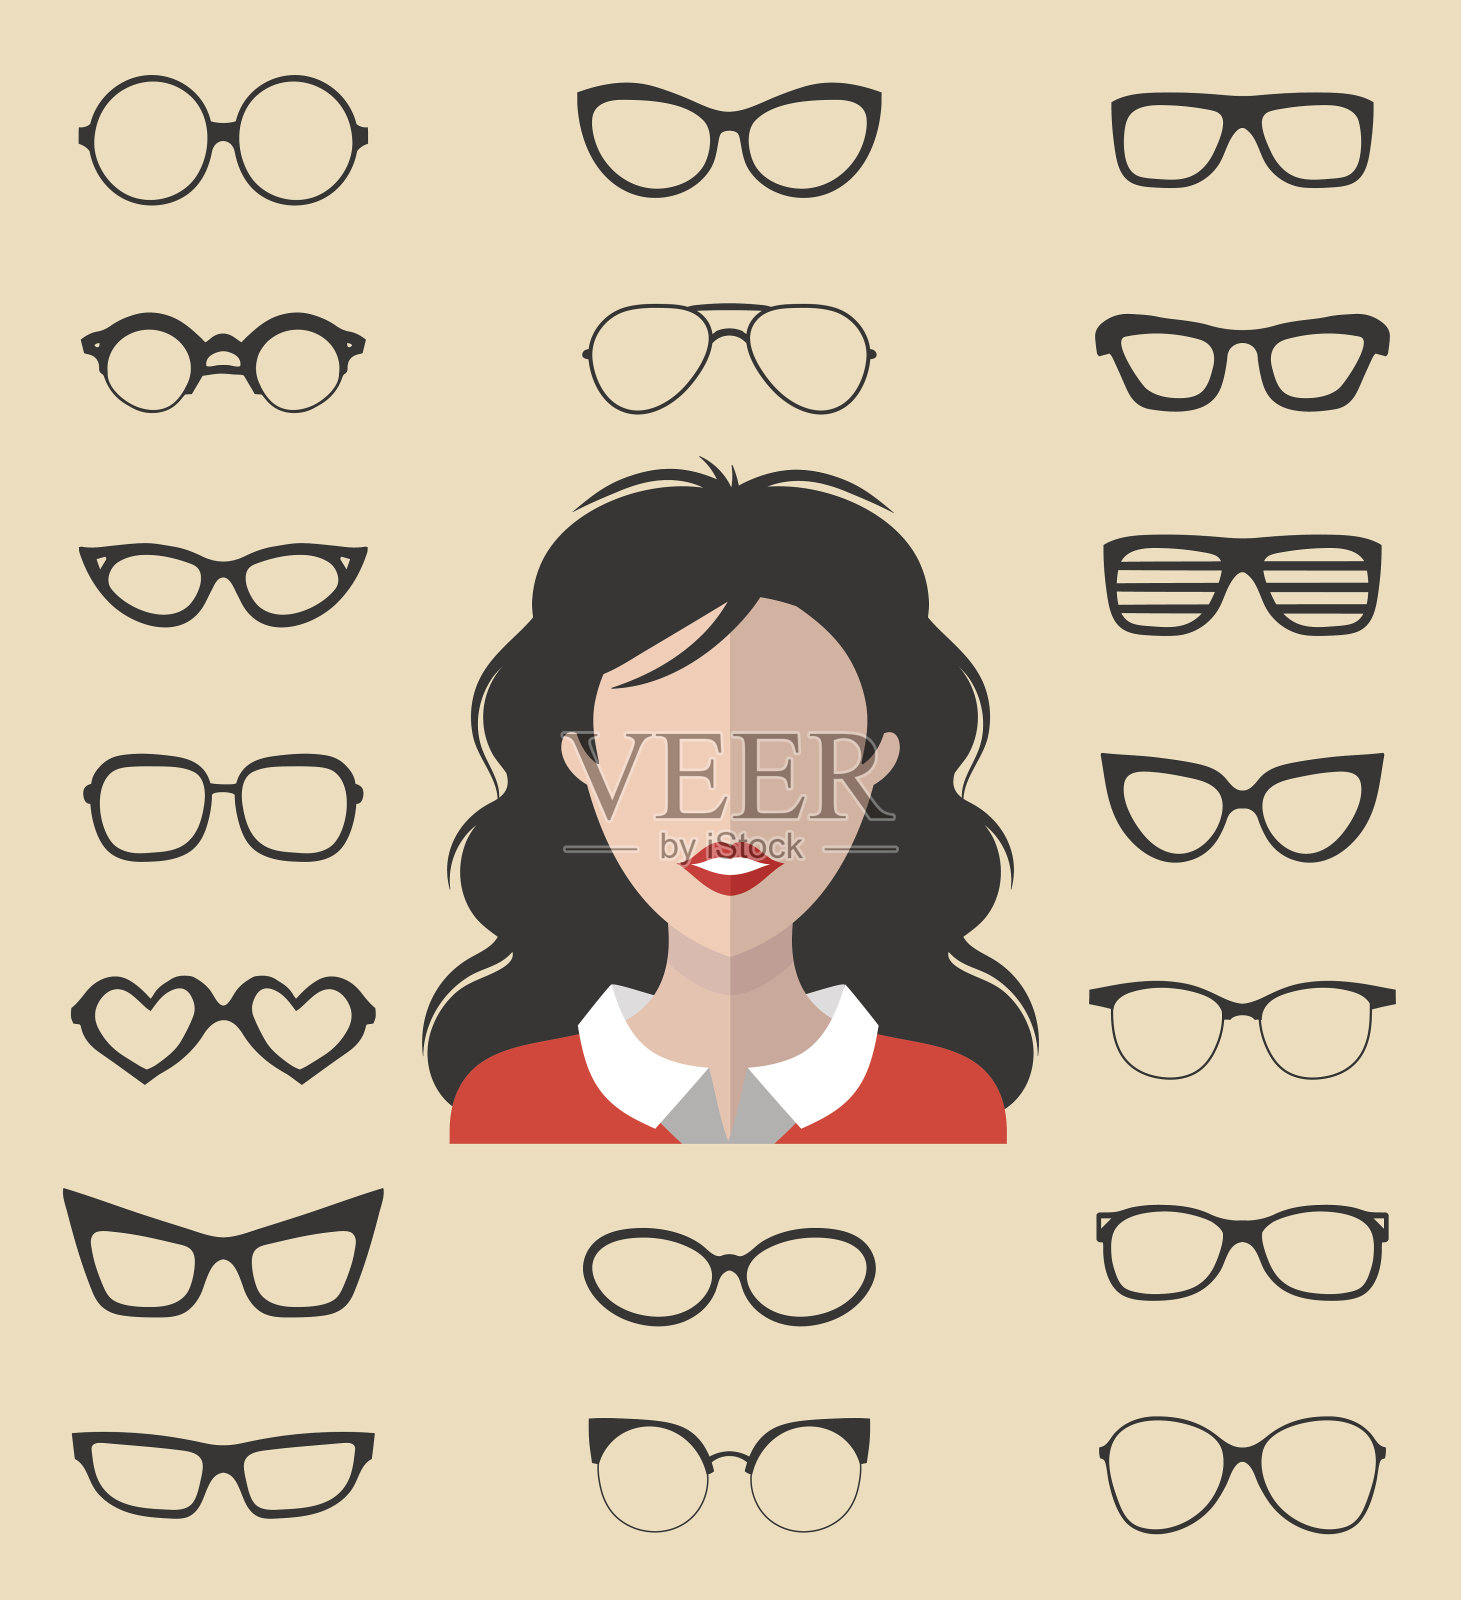 向量集的装扮构造器与不同的眼镜在时尚的平面风格。戴墨镜的女性面对图标创造者。设计元素图片